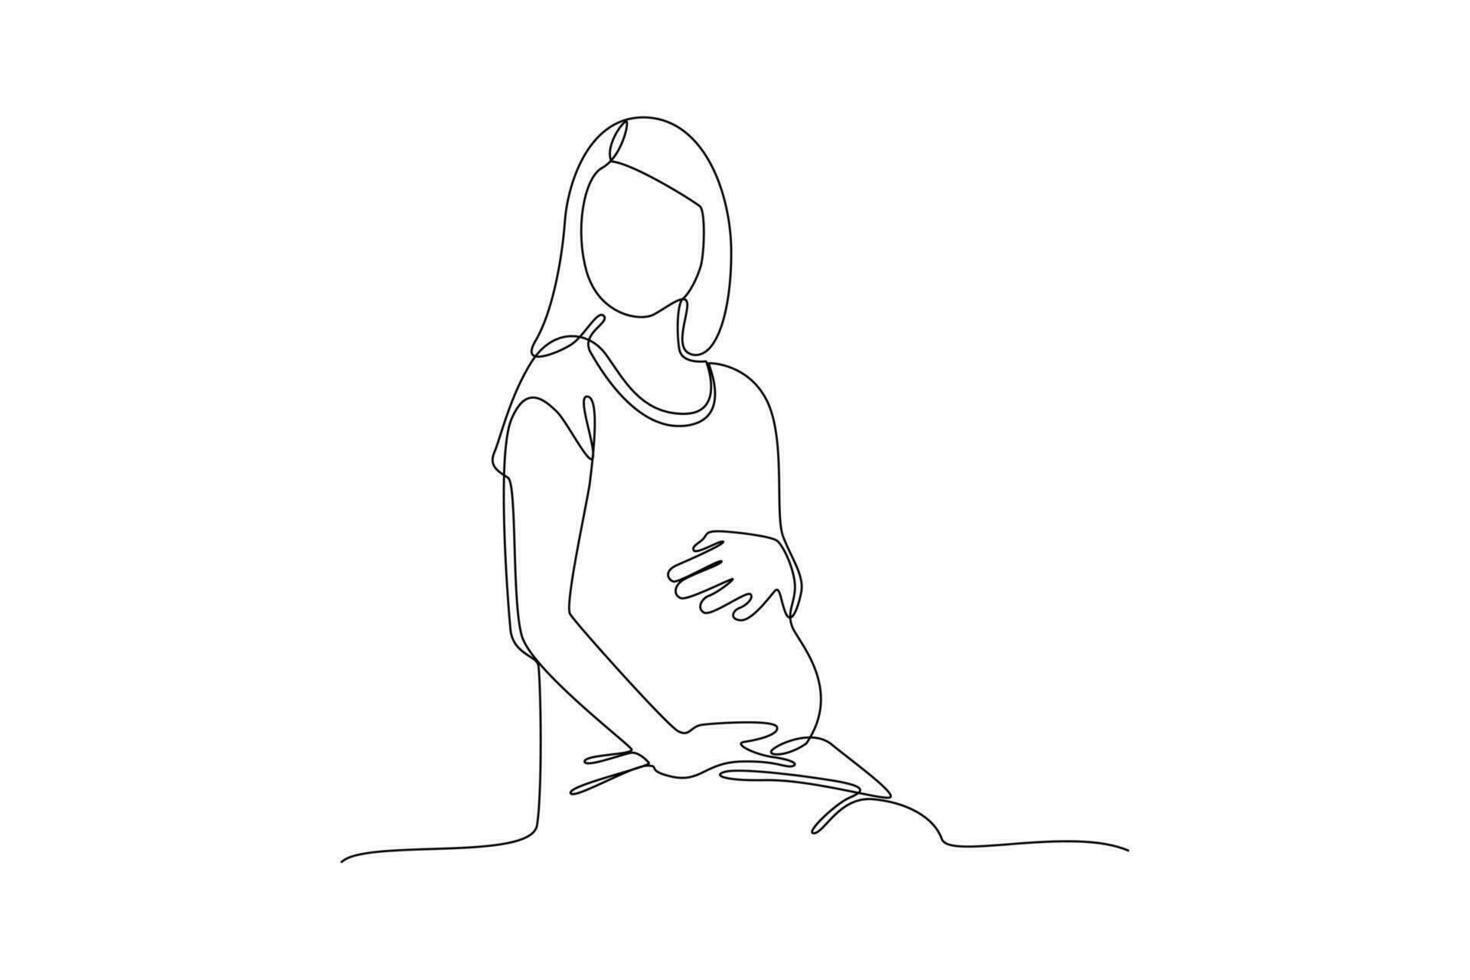 continuo uno linea disegno gravidanza e infantile perdita consapevolezza mese concetto. scarabocchio vettore illustrazione.